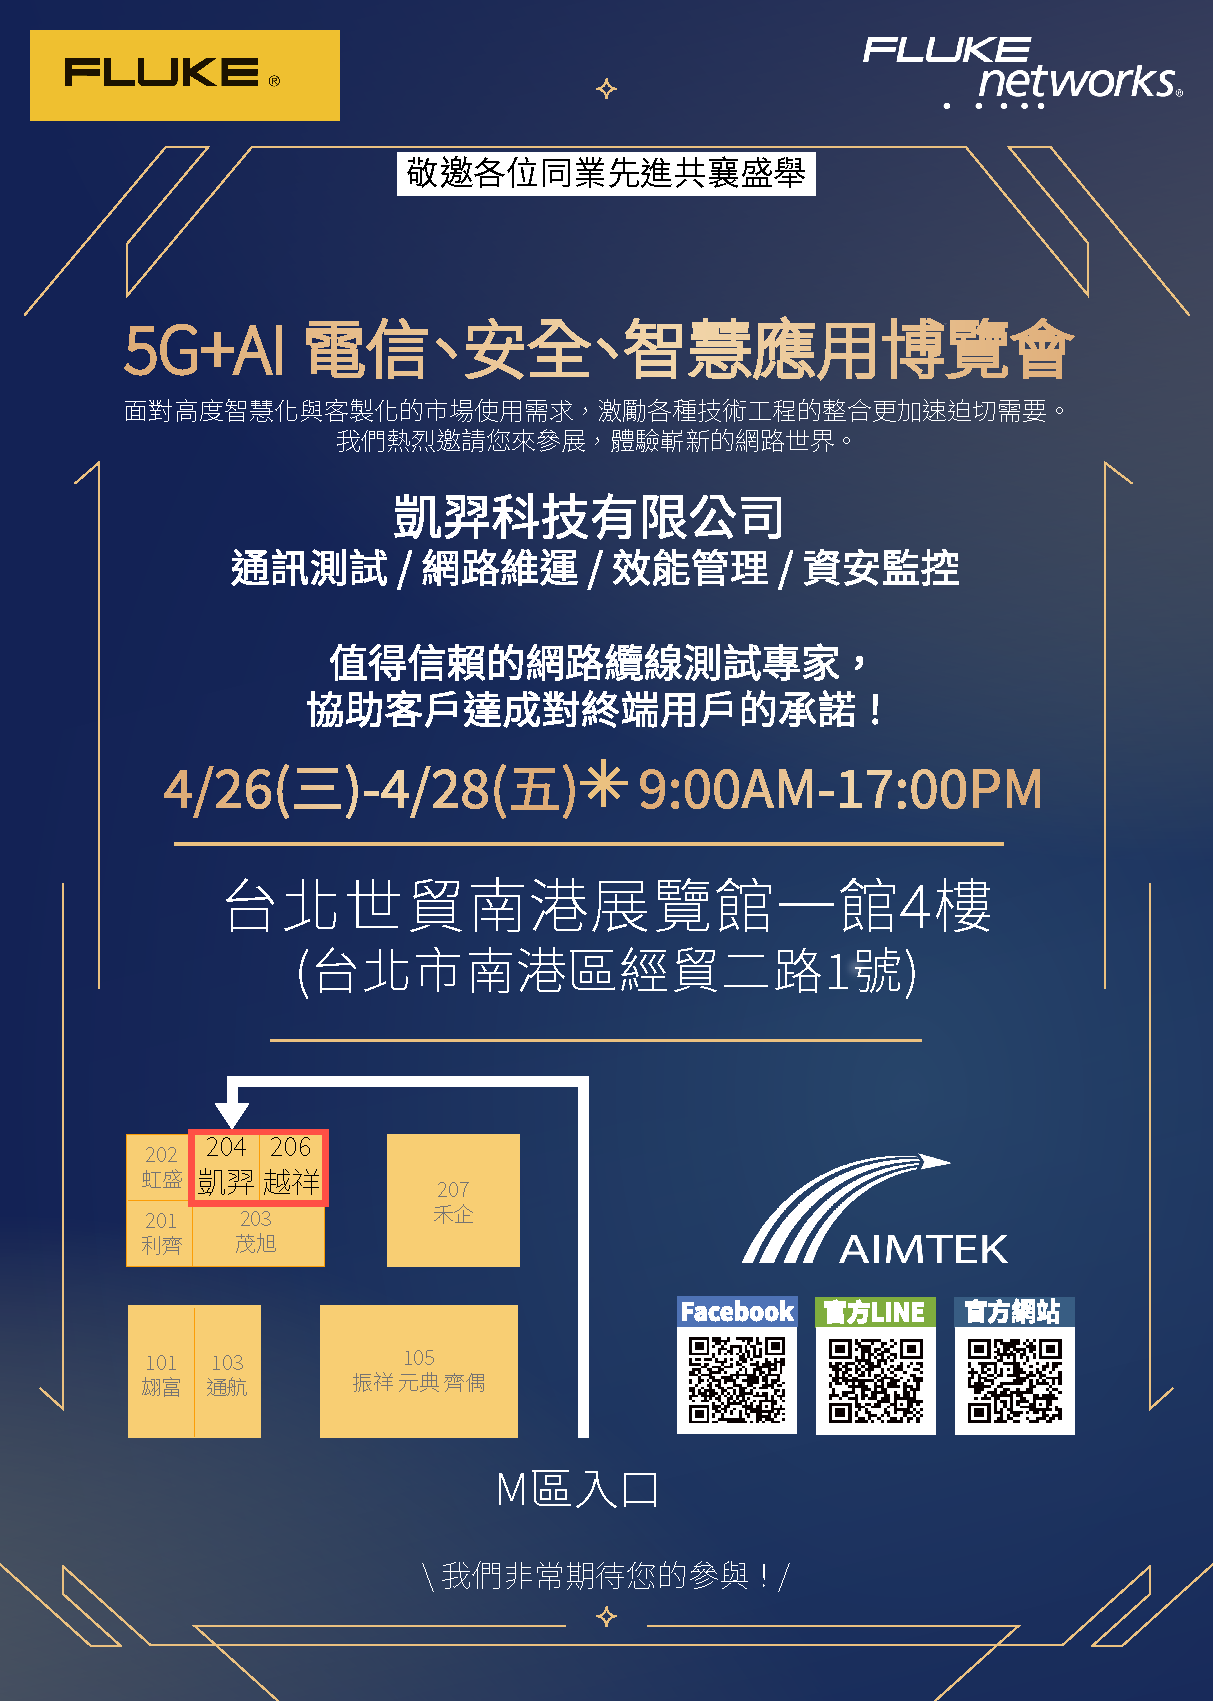 【5G+AI 電信、安全、智慧應用博覽會】4/26-4/28 南港展覽館